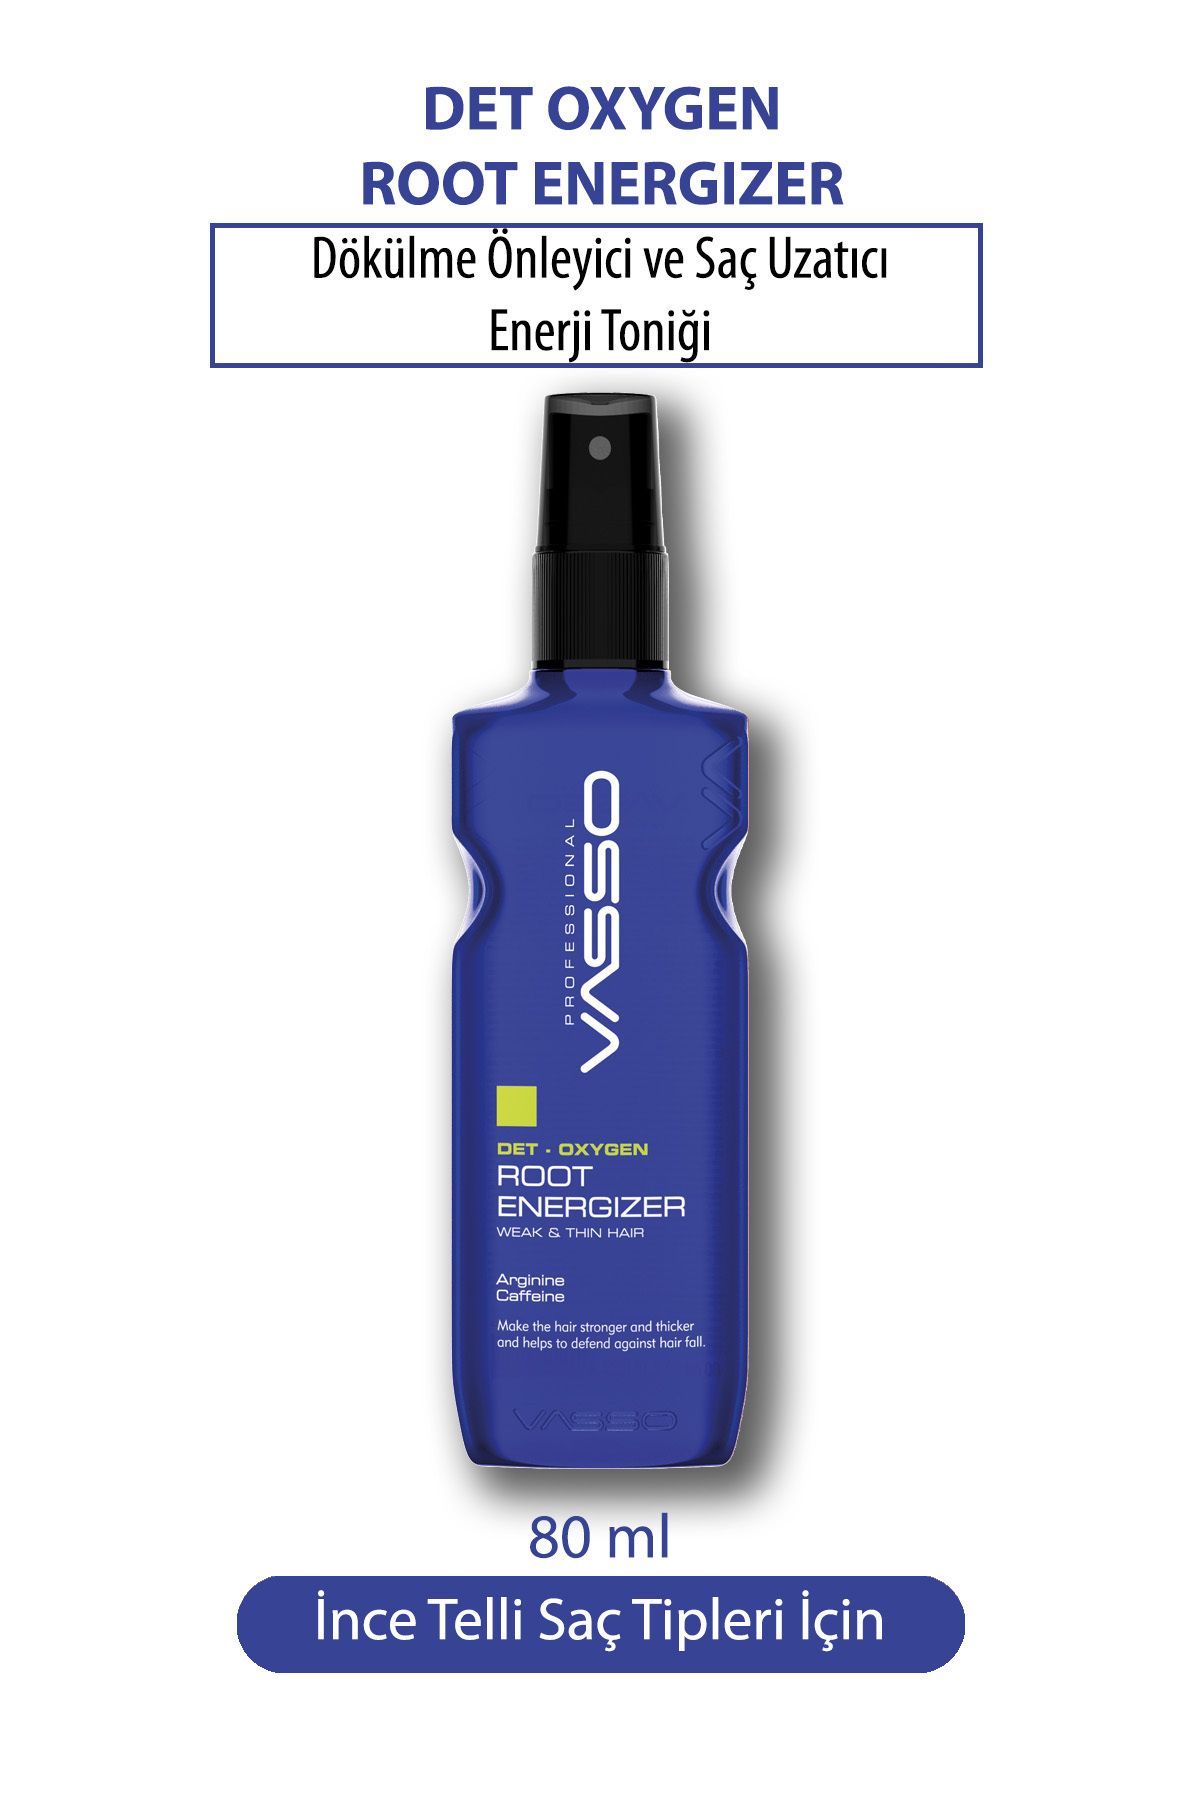 VASSO WOMEN Dökülme Önleyici Ve Hızlı Saç Uzatıcı Saç Toniği Güçlendirici Serum Root Energizer 80 ml